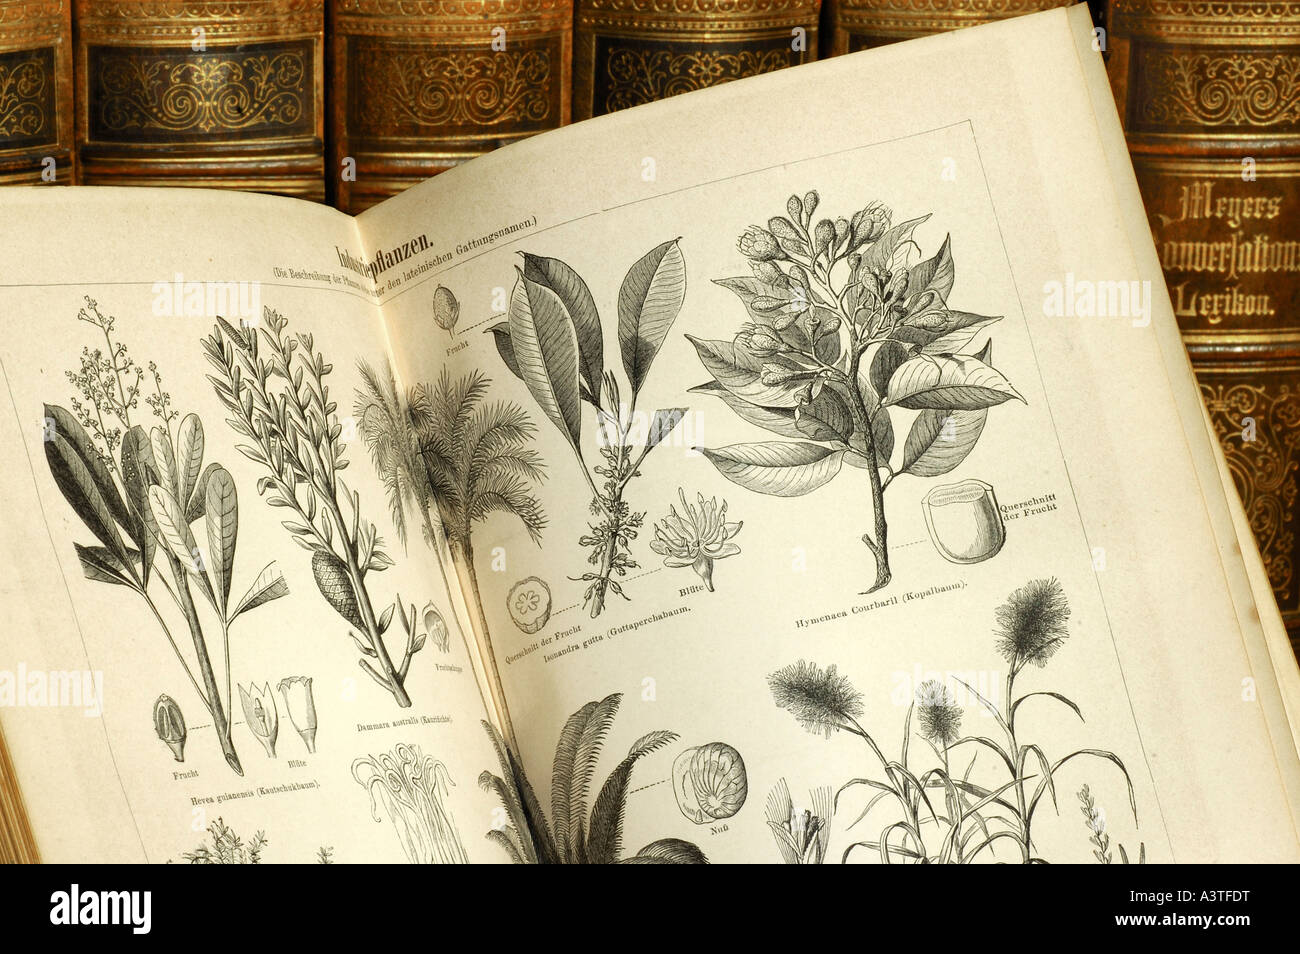 Illustrations de plantes utiles dans un volume d'une ancienne édition de Meyers lexicon Banque D'Images